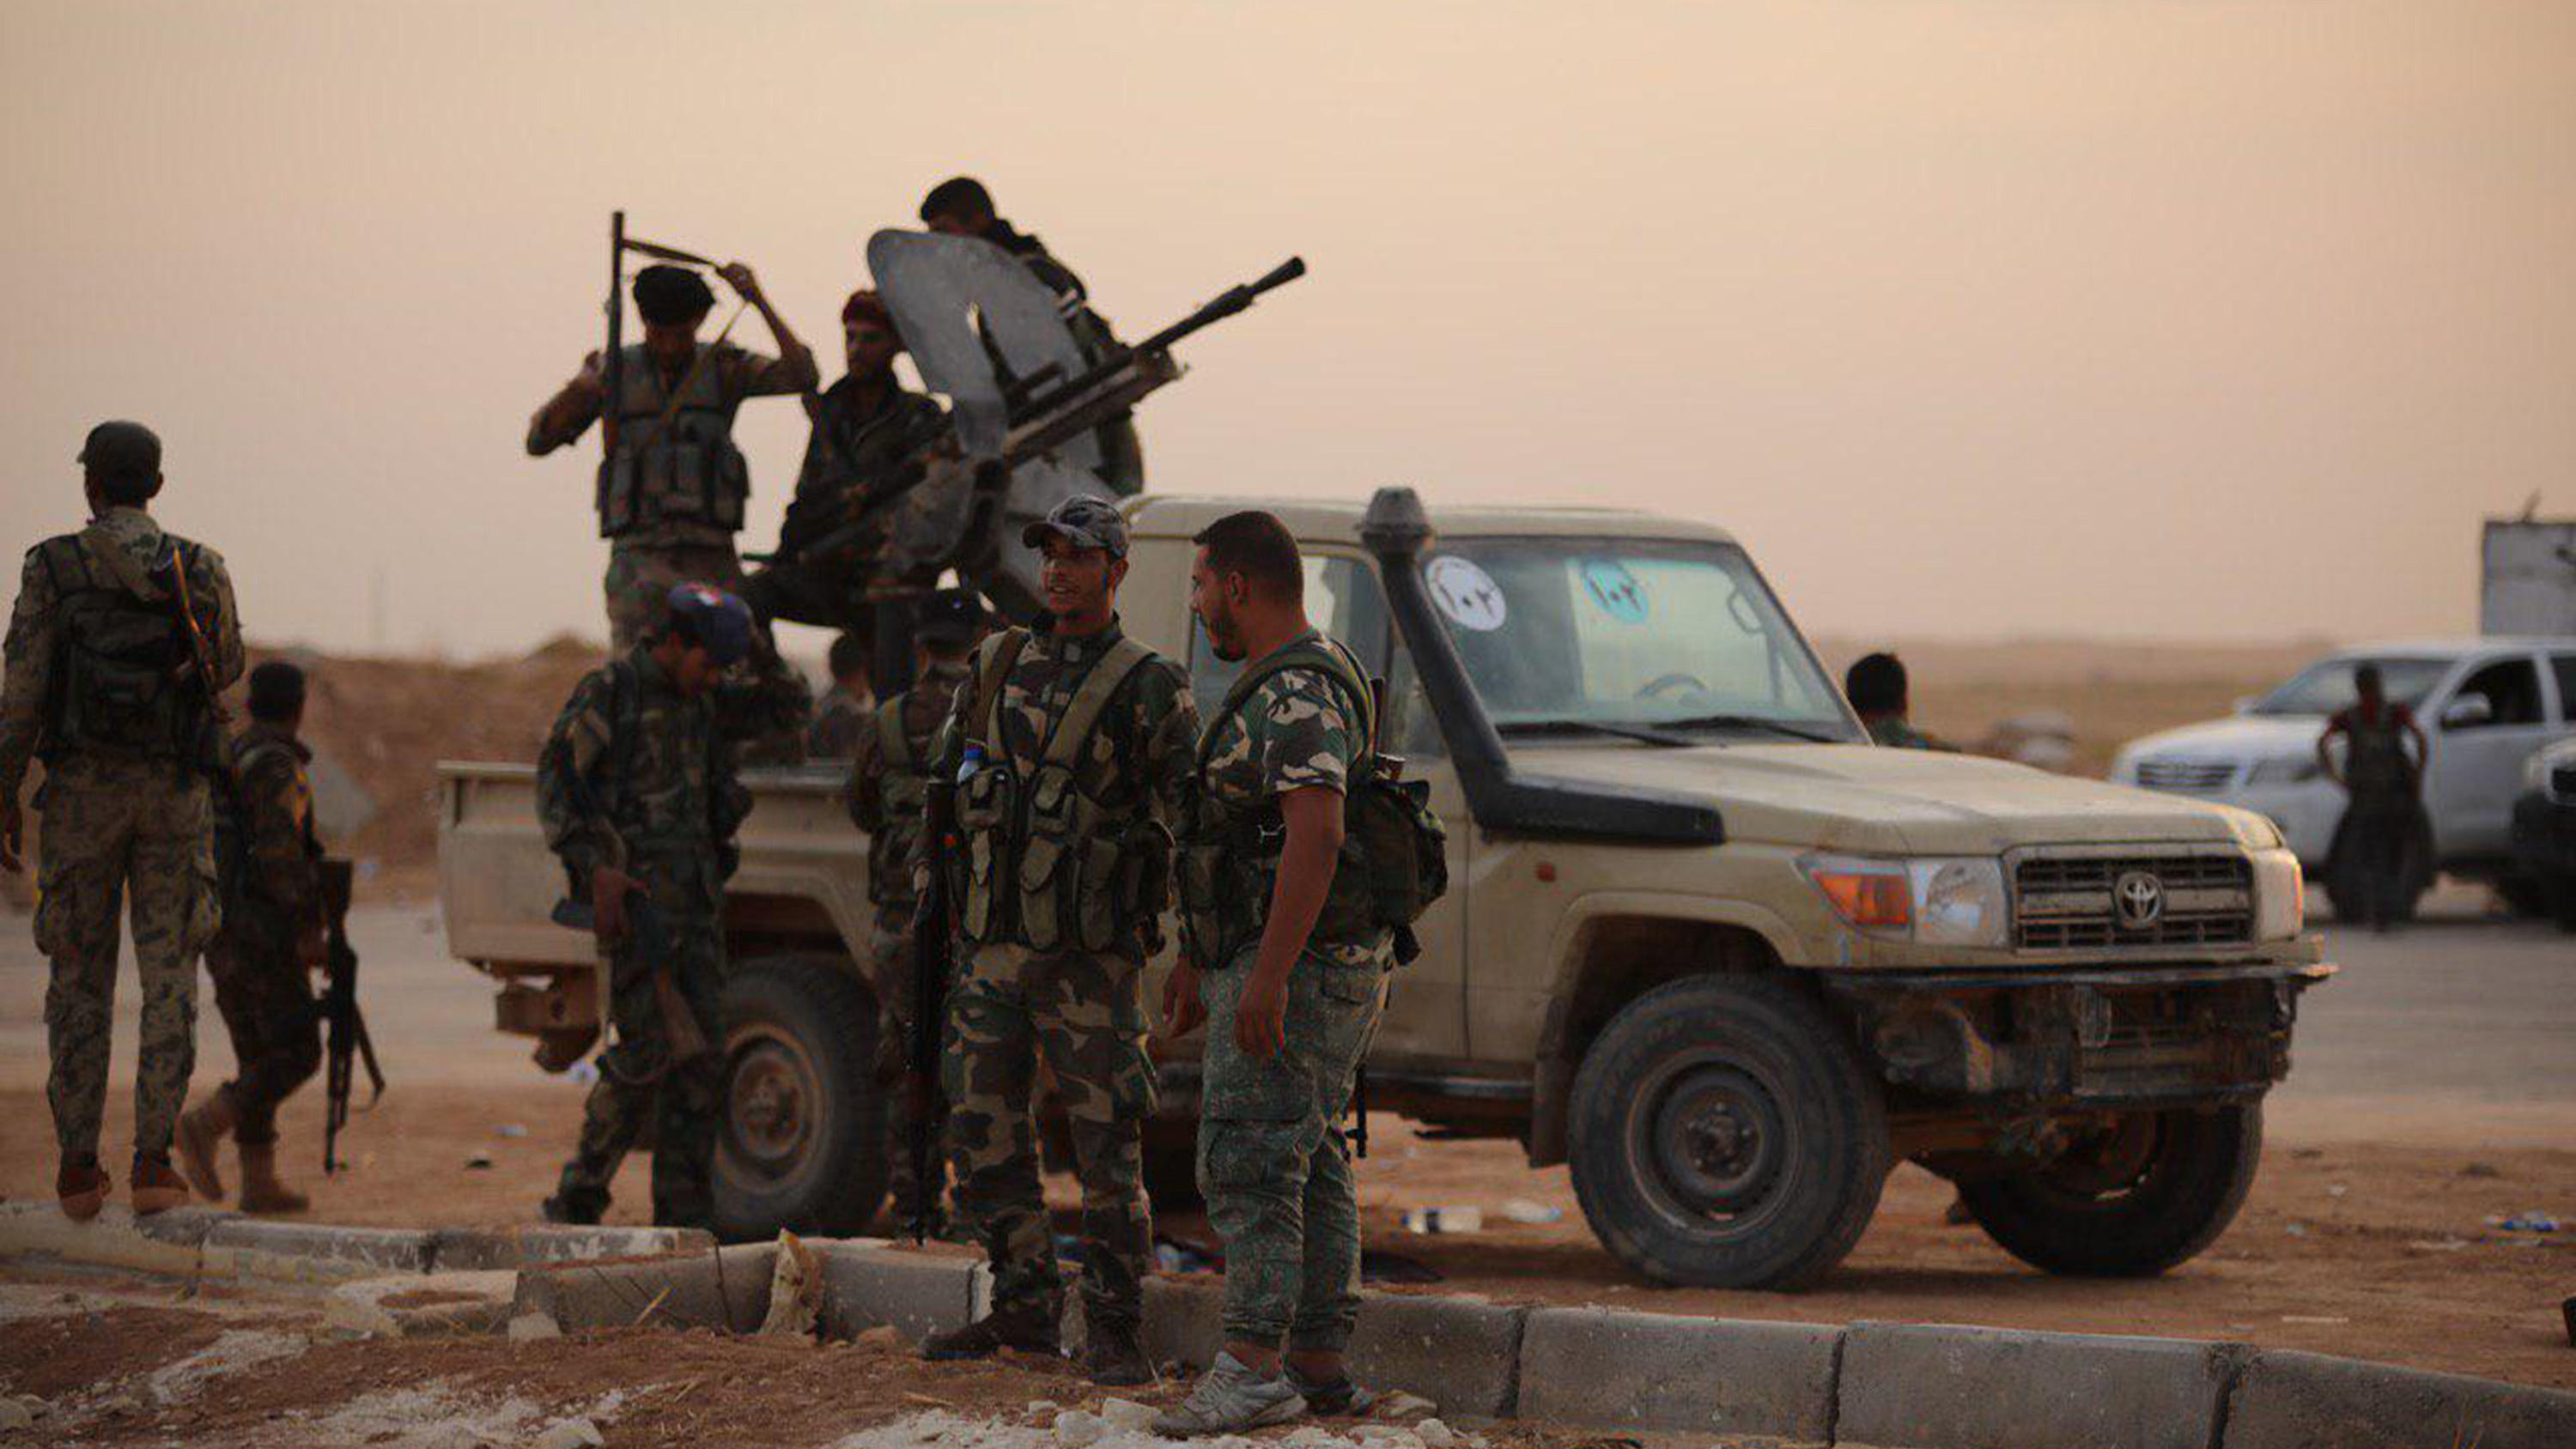 HANDOUT - 14.10.2019, Syrien, Ain Issa: Ein von der syrischen arabischen Nachrichtenagentur (SANA) zur Verfügung gestelltes Bild zeigt, dass syrische Regierungstruppen in den Luftwaffenstützpunkt Al-Tabqa südlich der syrischen Al-Rakka-Region einrück